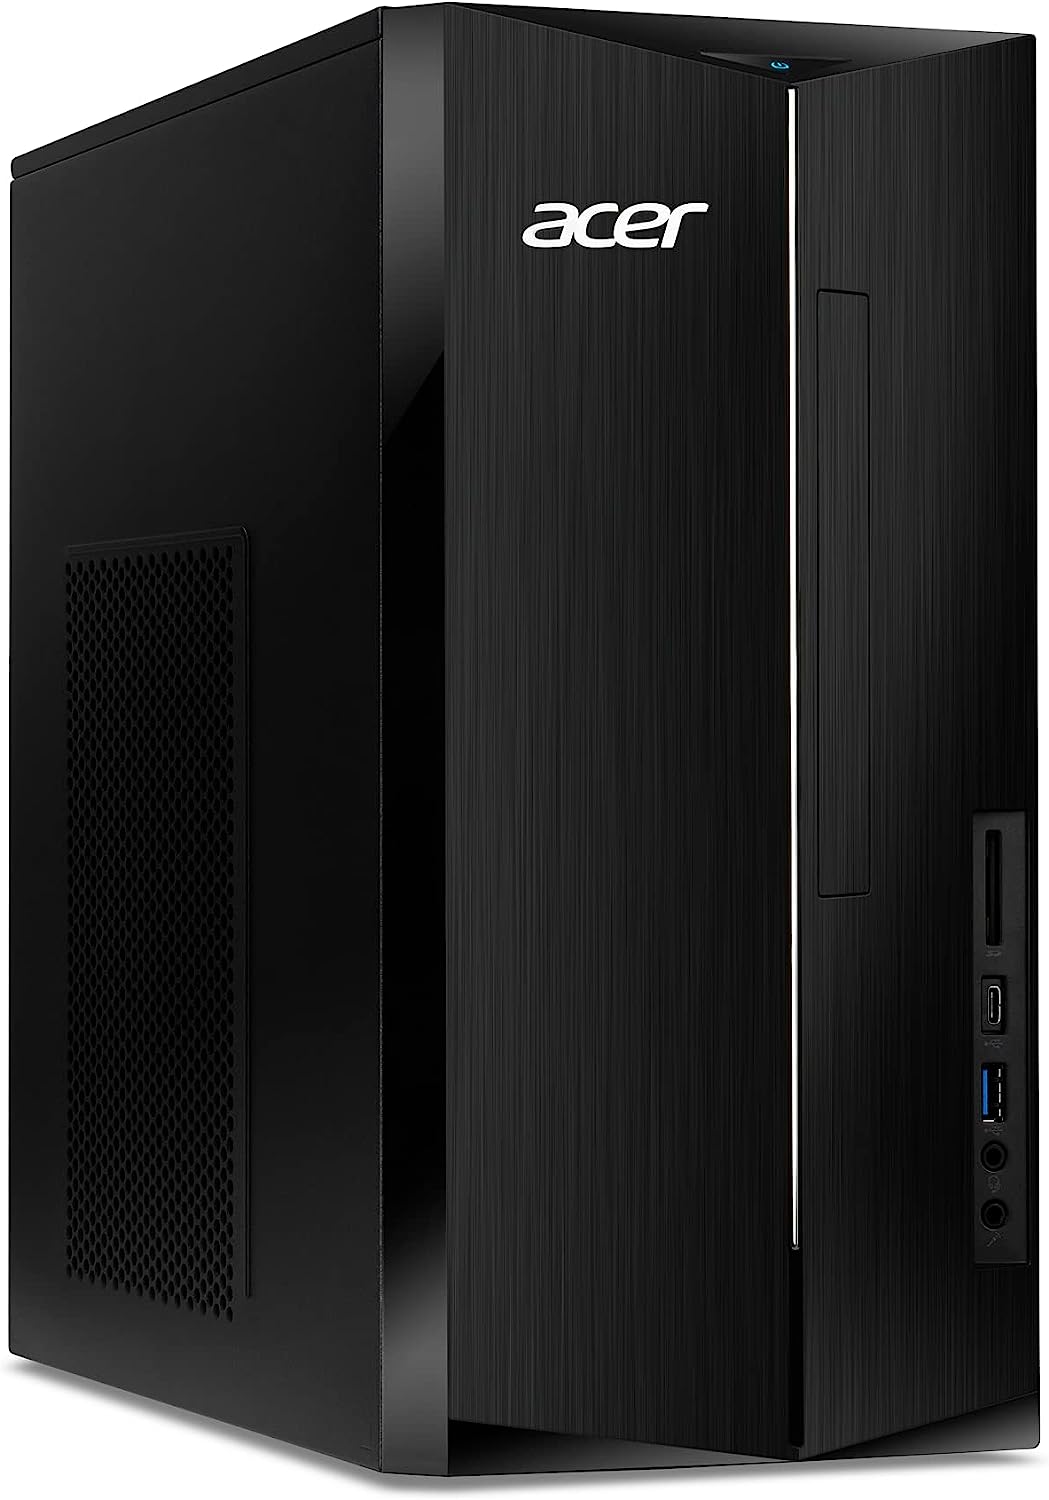 Acer Aspire TC-1760-UA92 Desktop | 12th Gen Intel Core i5-12400 6-Core Processor | 12GB 3200MHz DDR4 | 512GB NVMe M.2 SSD | 8X DVD | Intel Wireless Wi-Fi 6 AX201 | Bluetooth 5.2 | Windows 11 Home